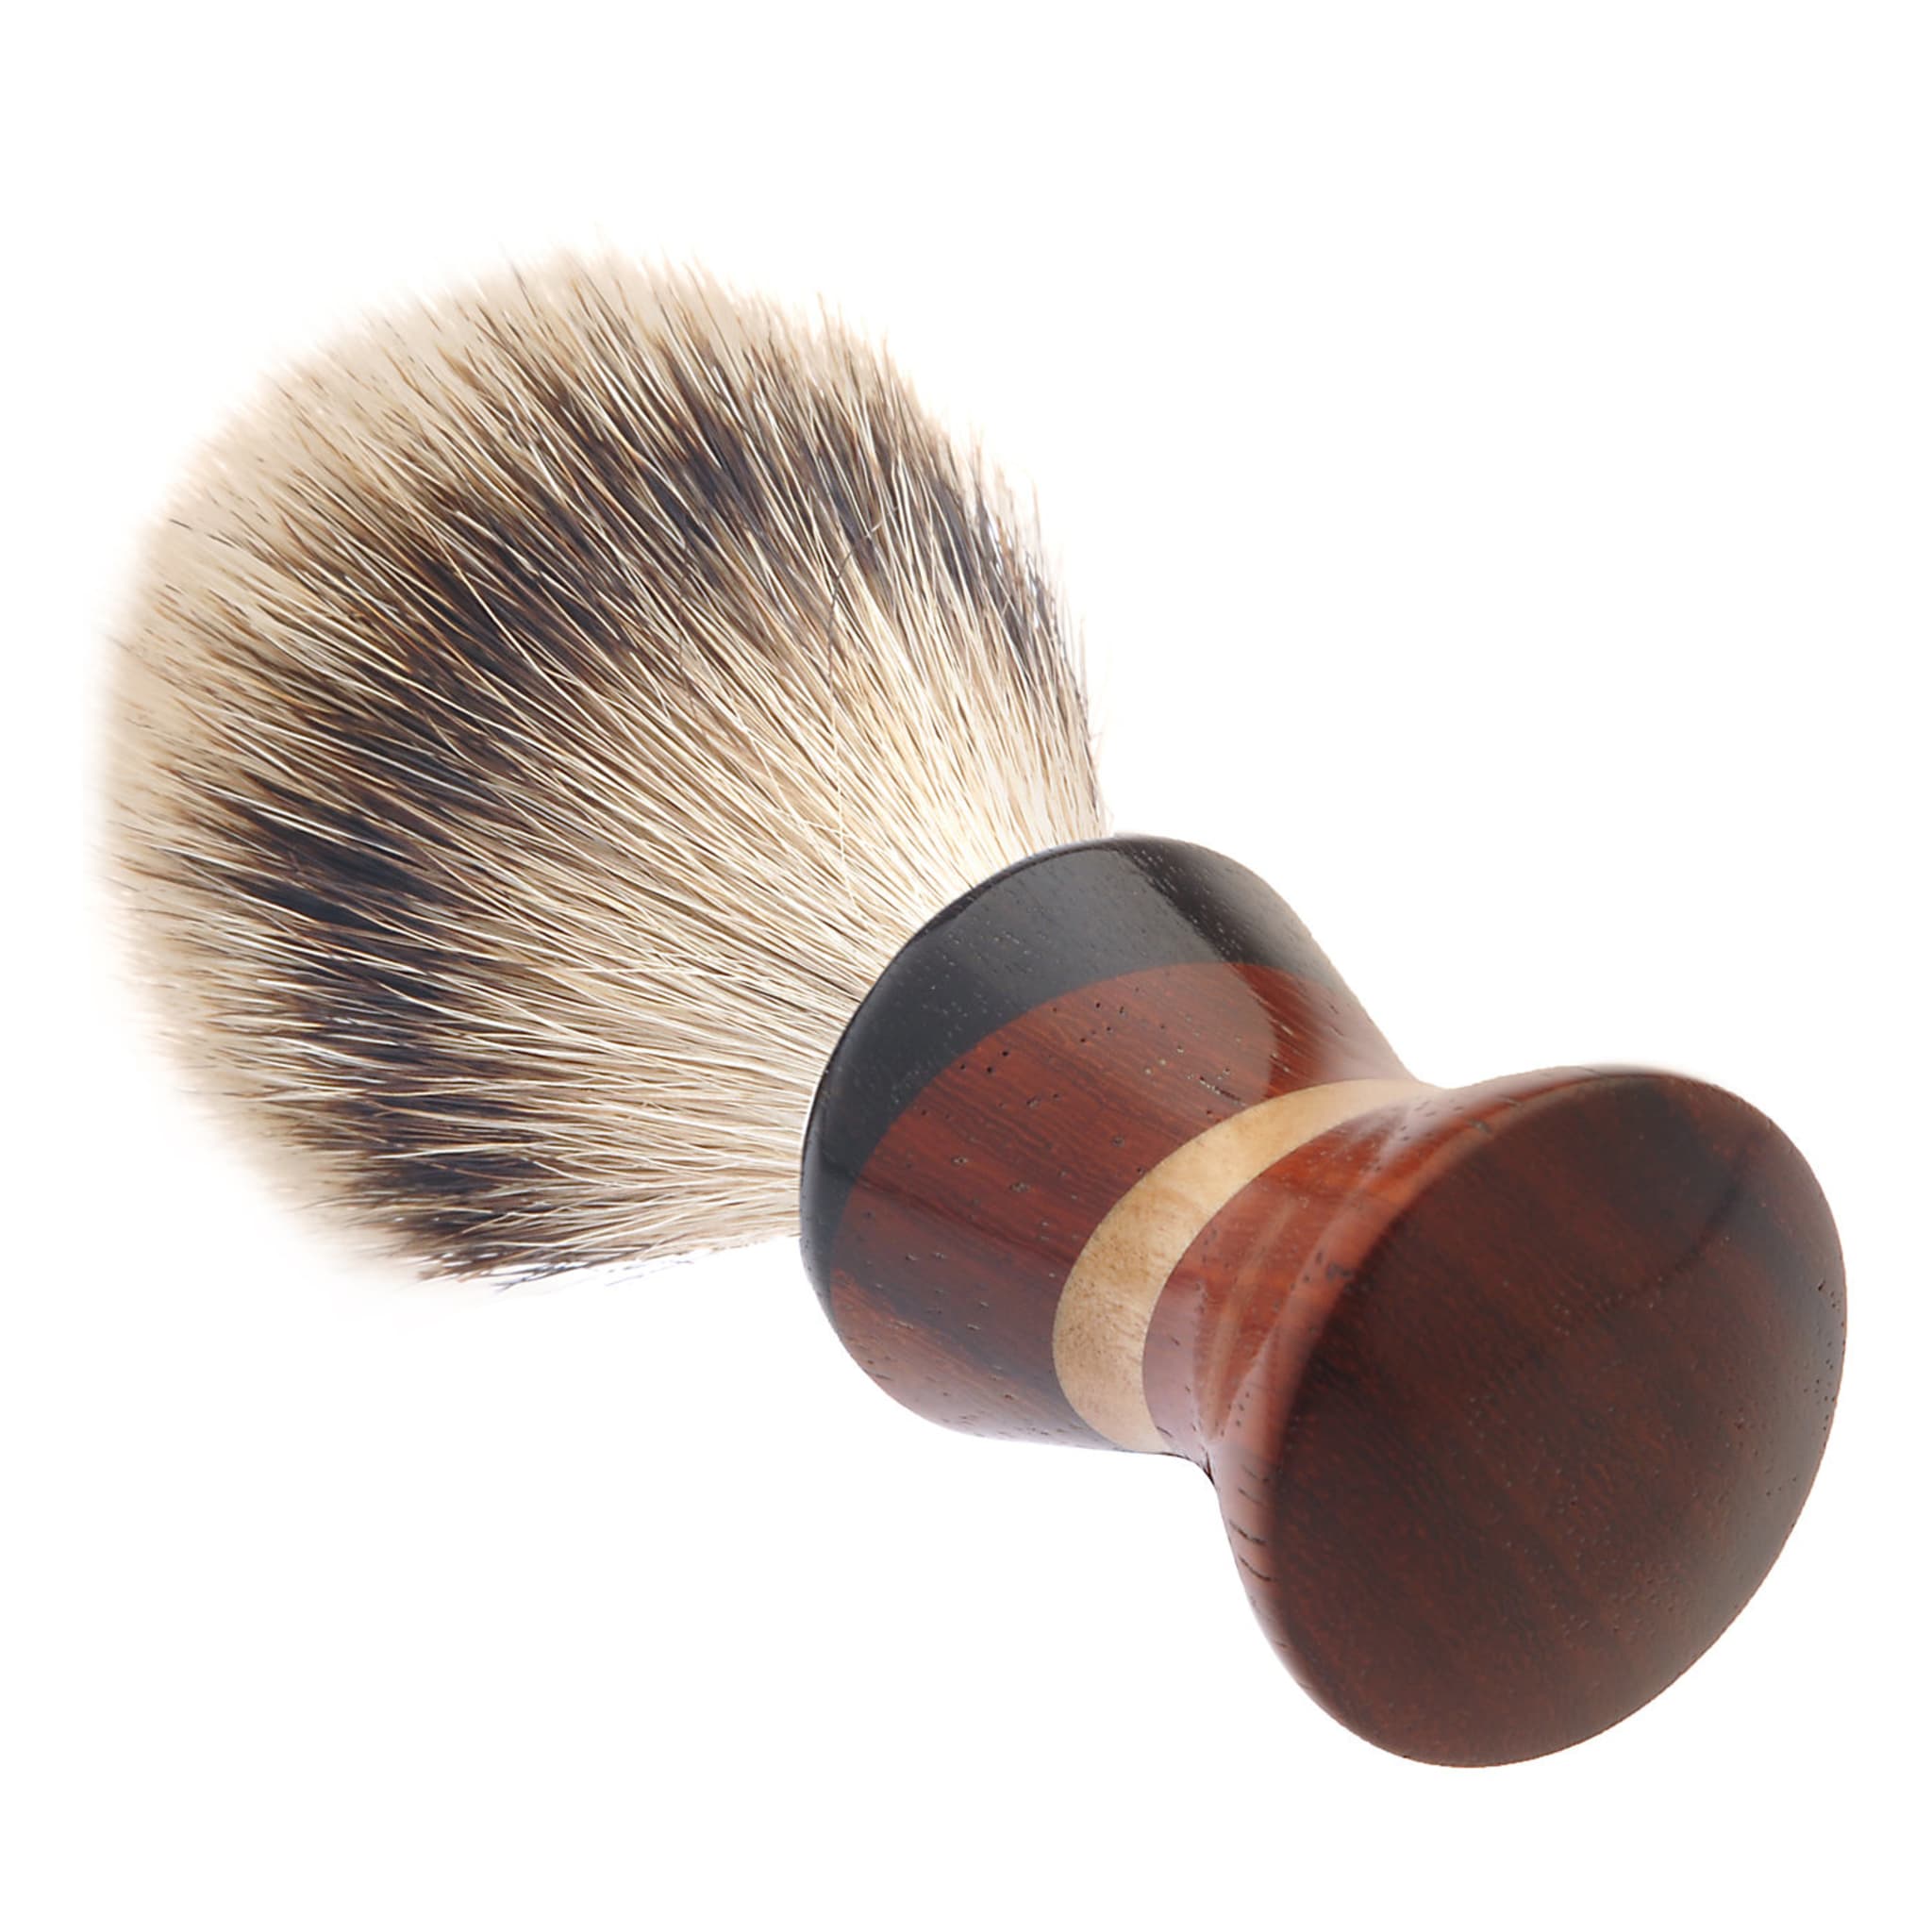 Shaving Brush in Padauk and African Ebony Wood - Alternative view 3